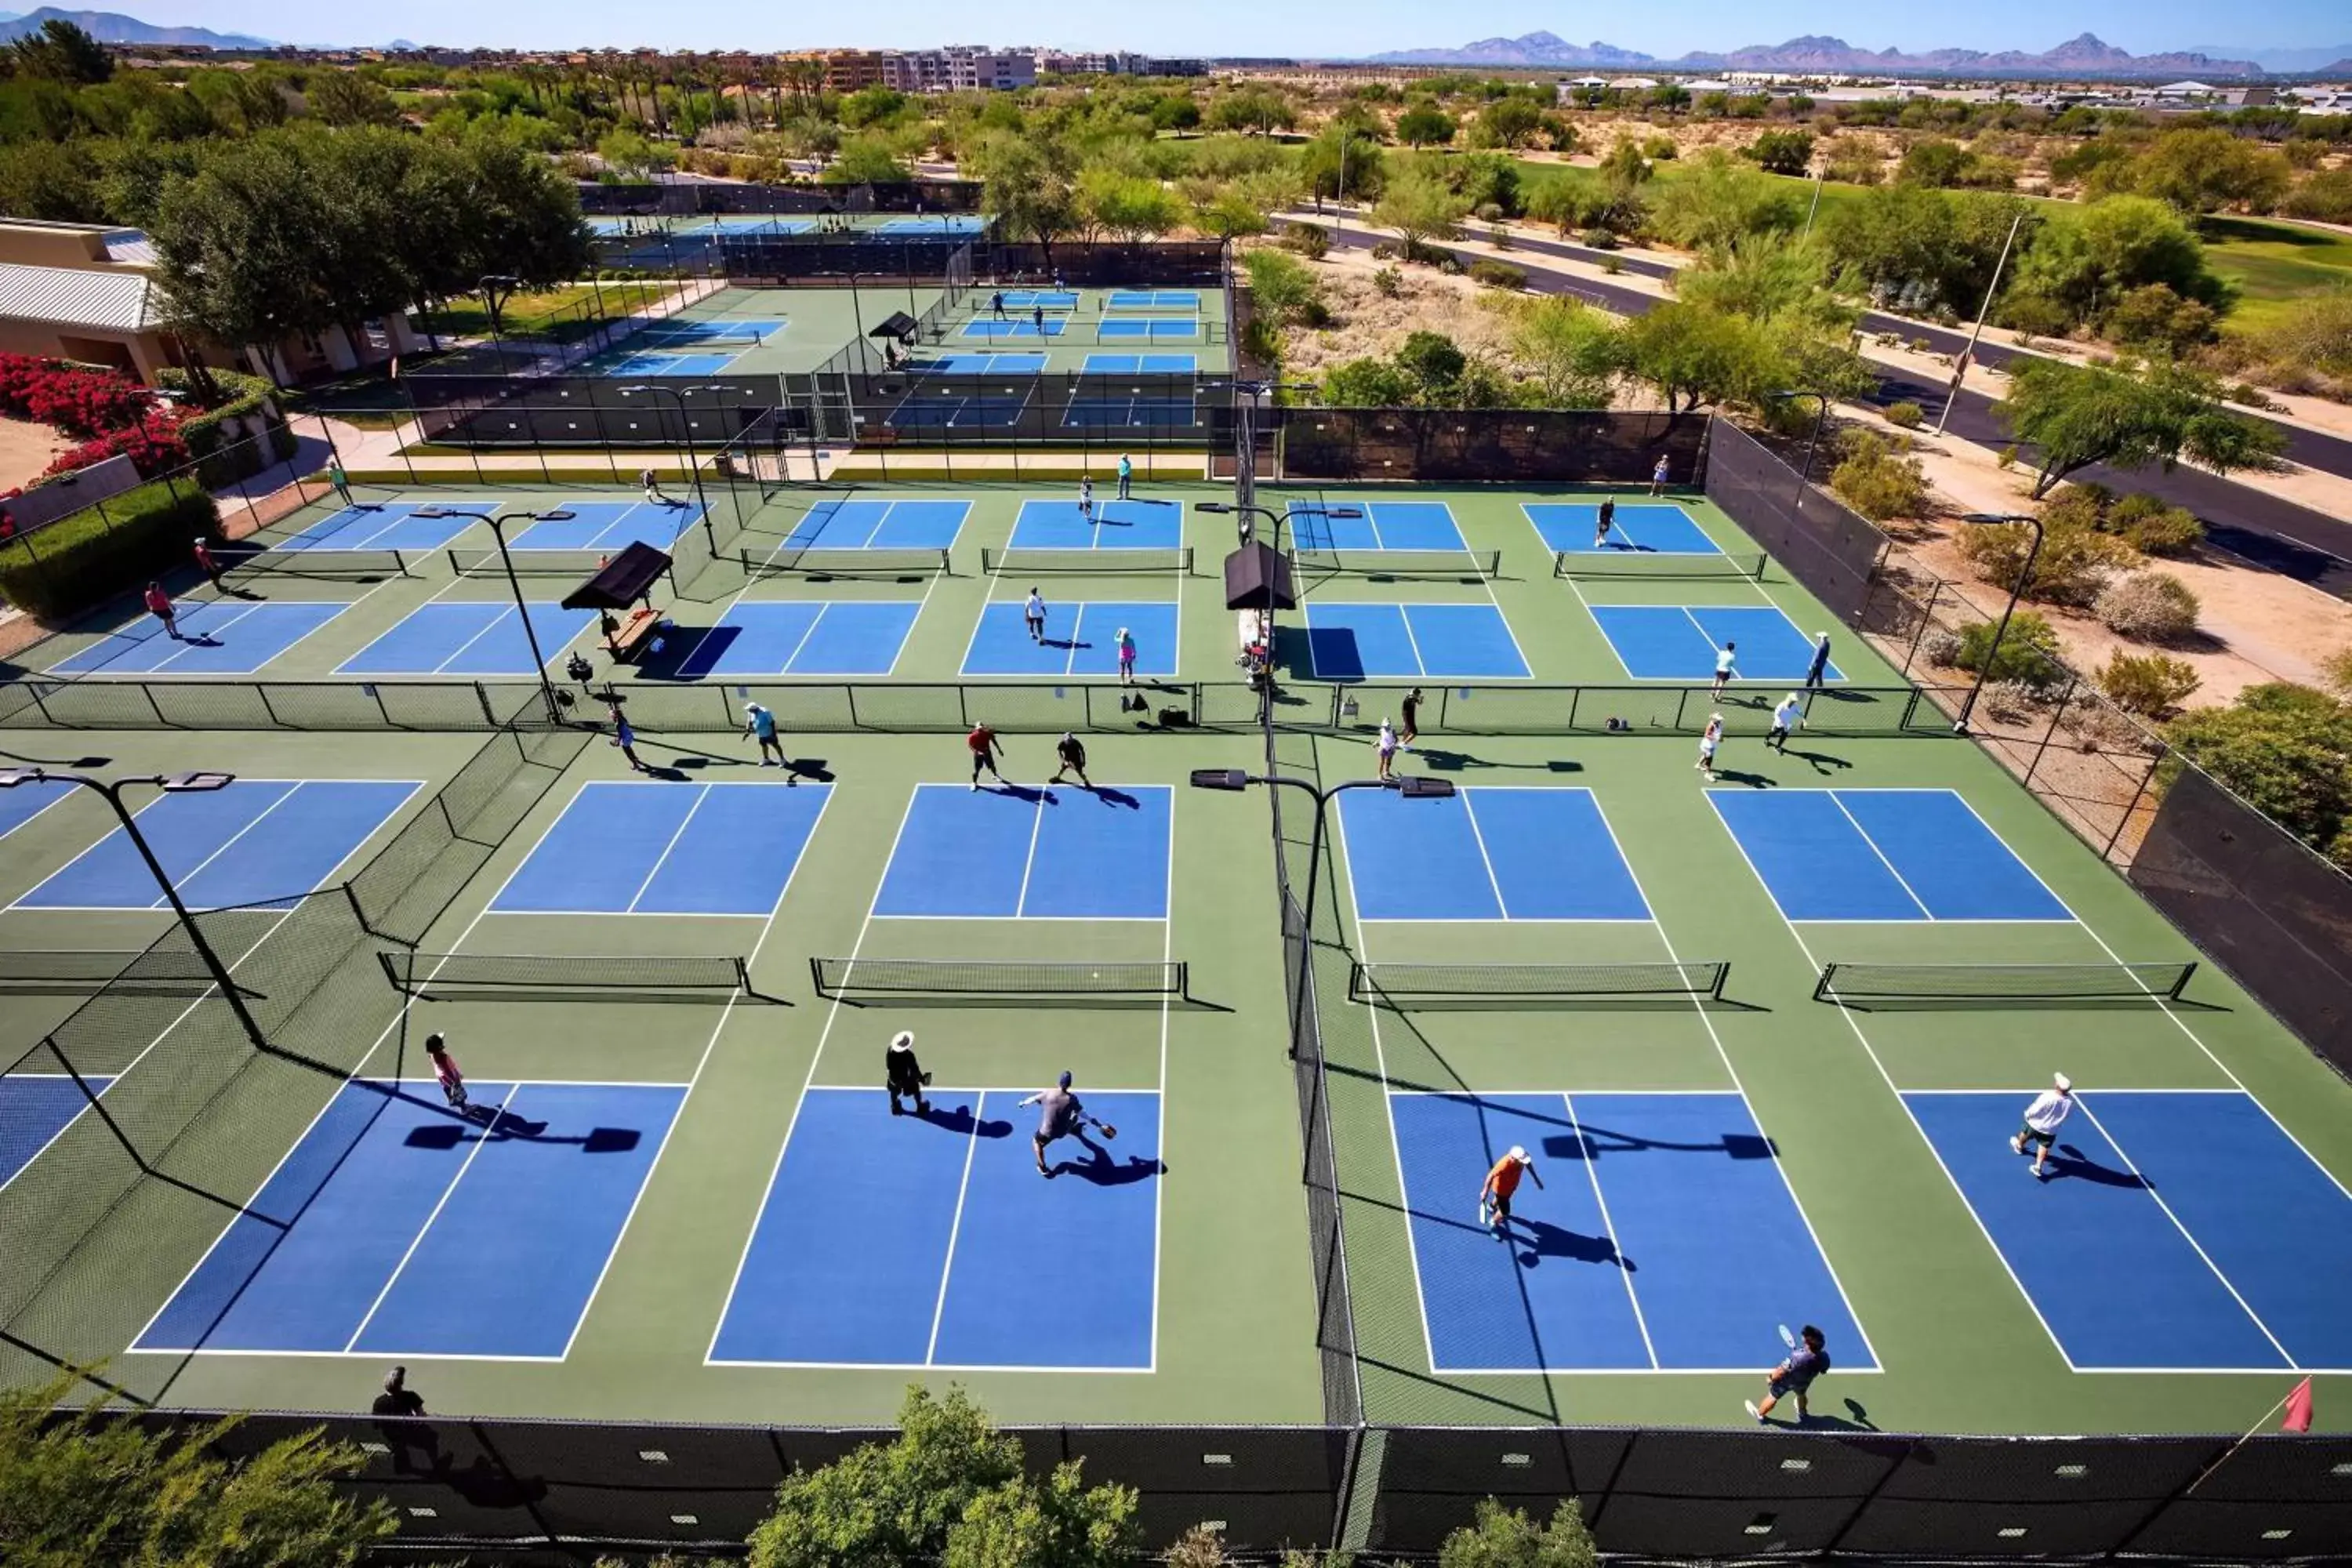 Area and facilities, Bird's-eye View in JW Marriott Phoenix Desert Ridge Resort & Spa